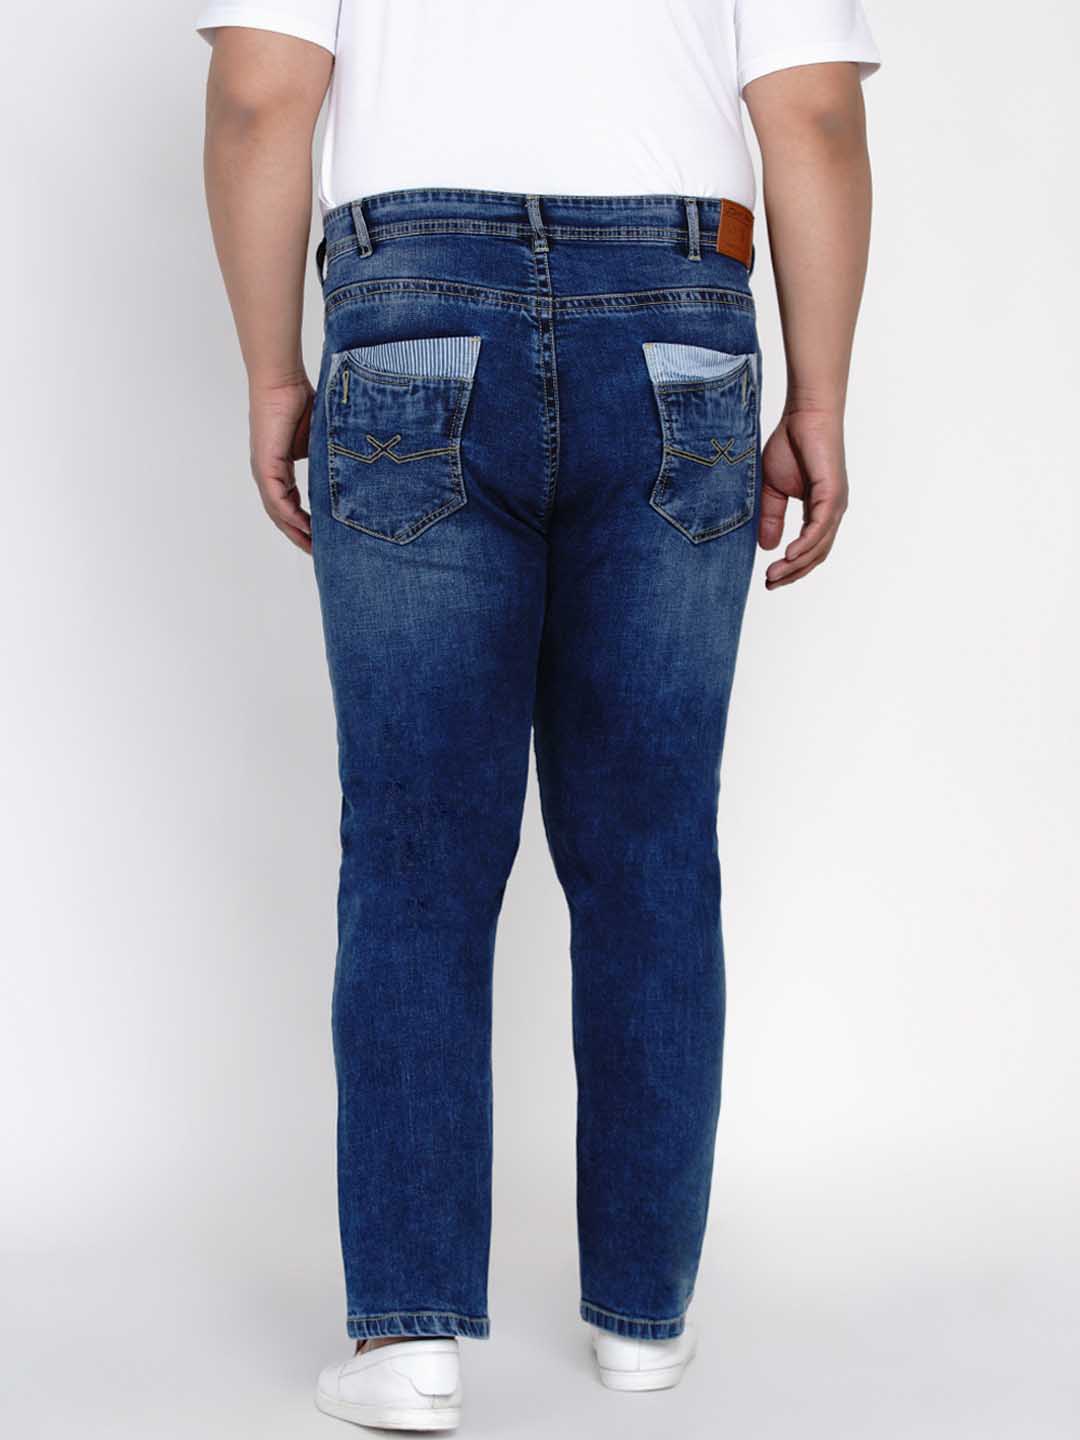 bottomwear/jeans/JPJ12126/jpj12126-4.jpg